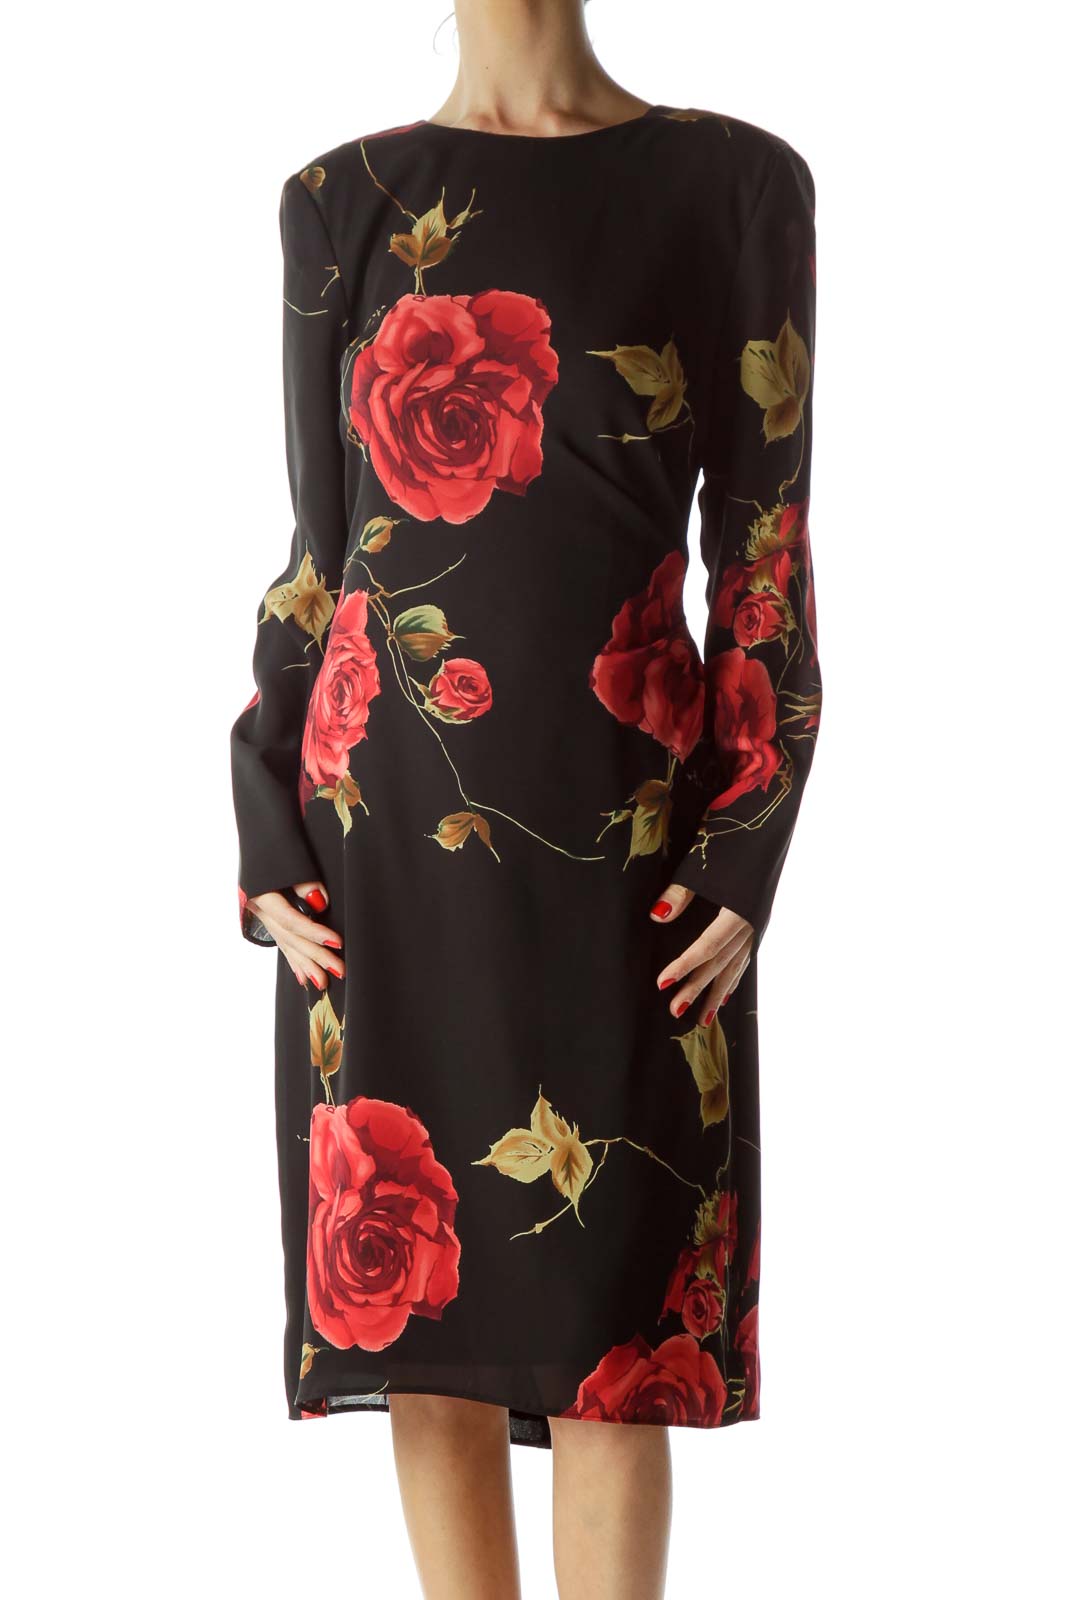 Black Rose Floral Dress Front